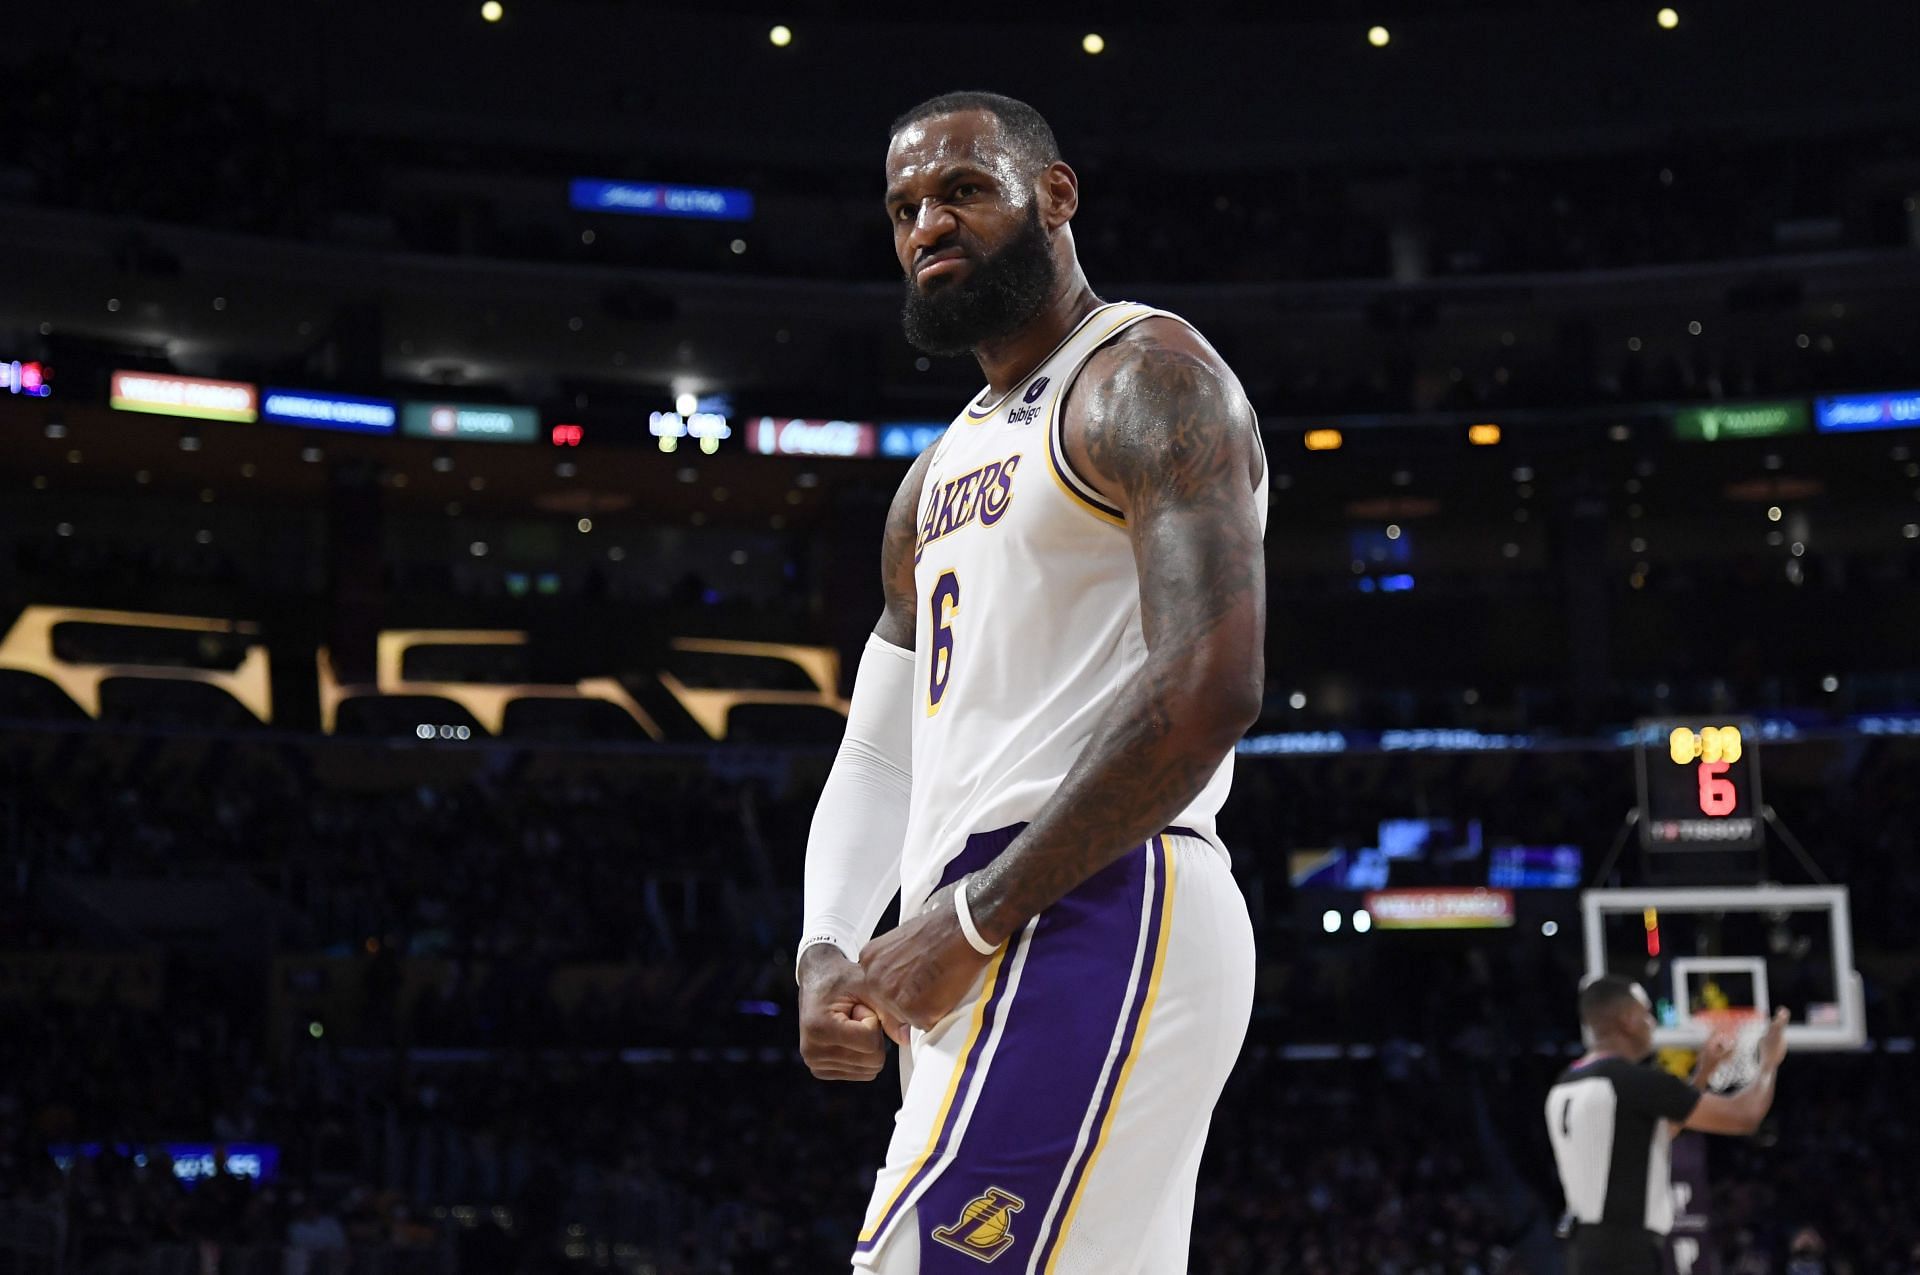 LeBron James of the LA Lakers celebrates against the Orlando Magic